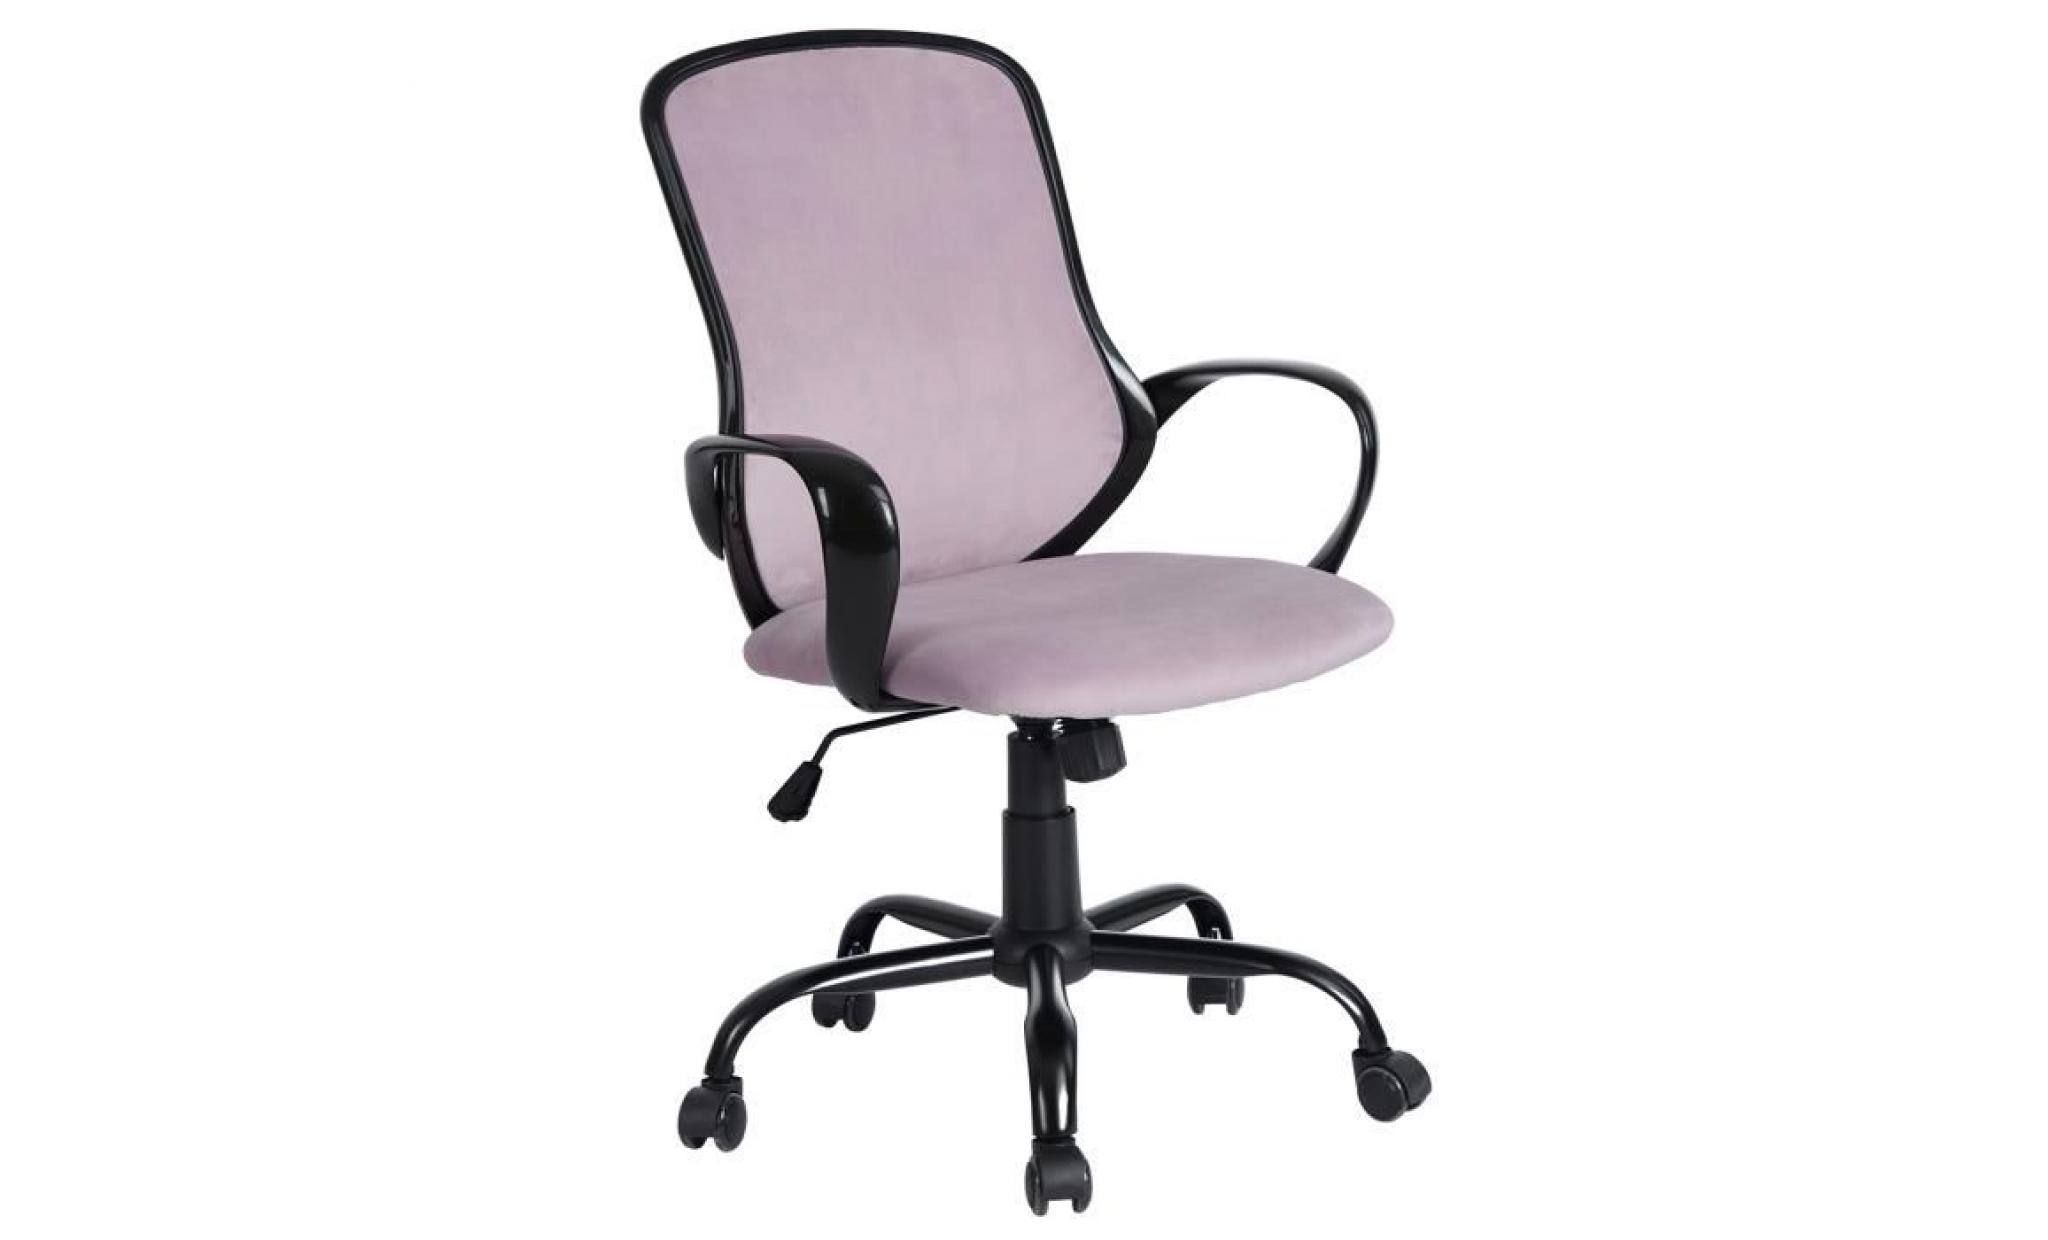 fauteuil de bureau rose avec dossier ergonomique en tissu respirant accoudoir en plastique,marque homy casa